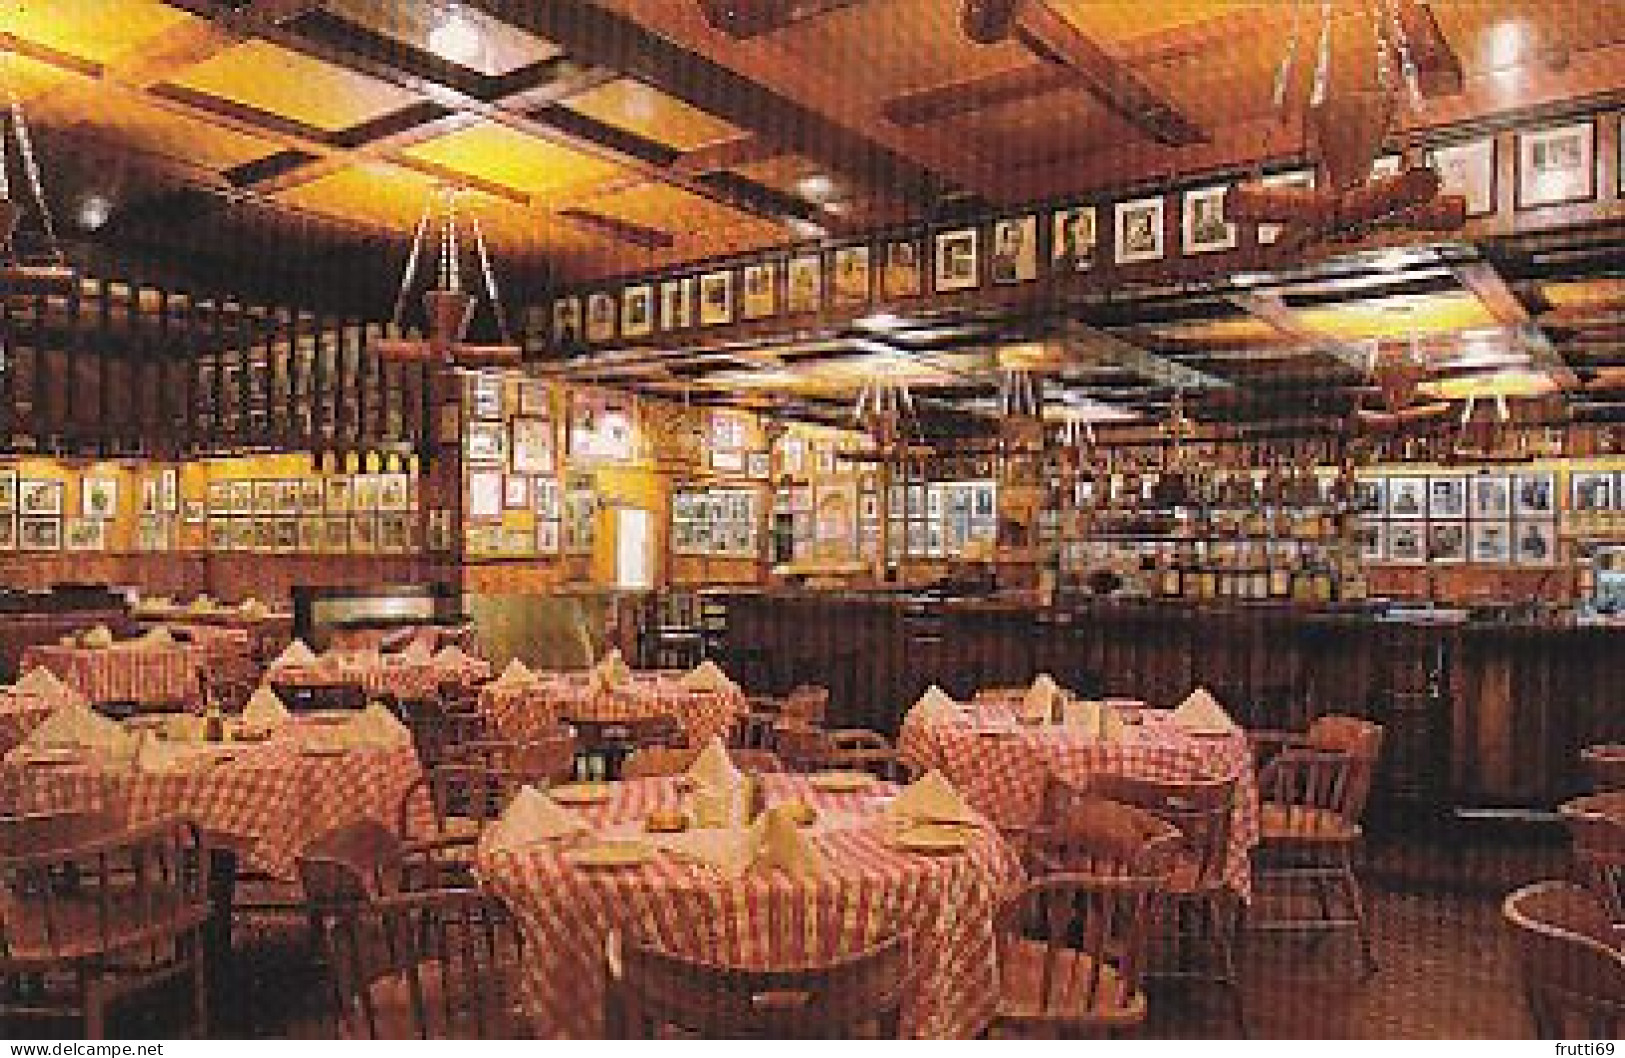 AK 183181 USA - New York City - Gallagher's Steak House - Wirtschaften, Hotels & Restaurants